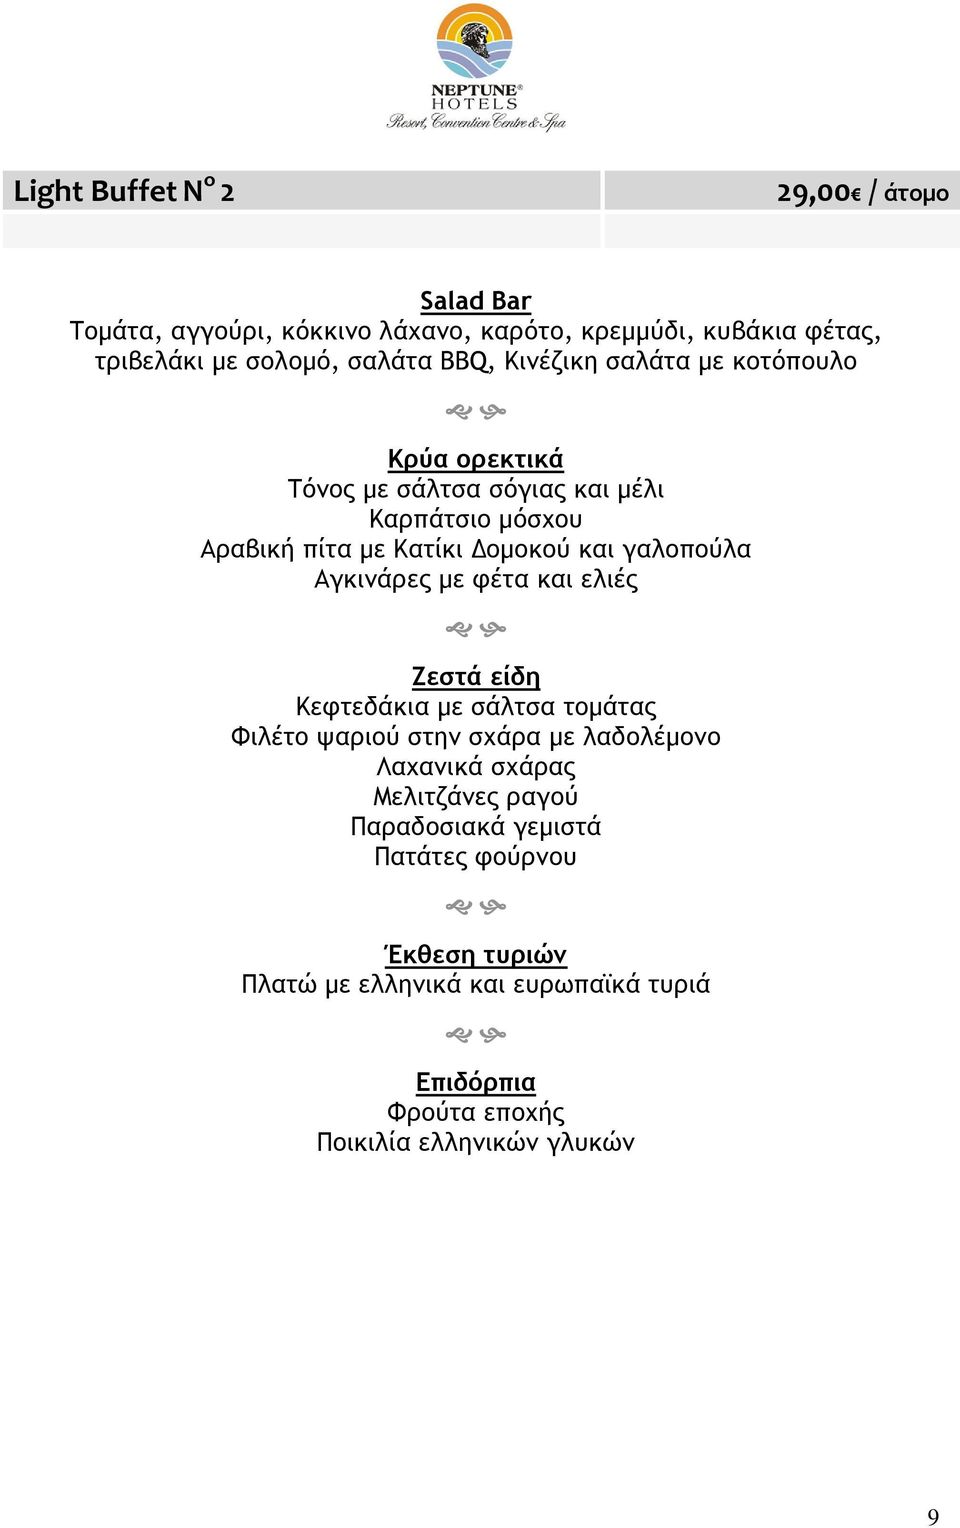 γαλοπούλα Αγκινάρες με φέτα και ελιές Ζεστά είδη Κεφτεδάκια με σάλτσα τομάτας Φιλέτο ψαριού στην σχάρα με λαδολέμονο Λαχανικά σχάρας